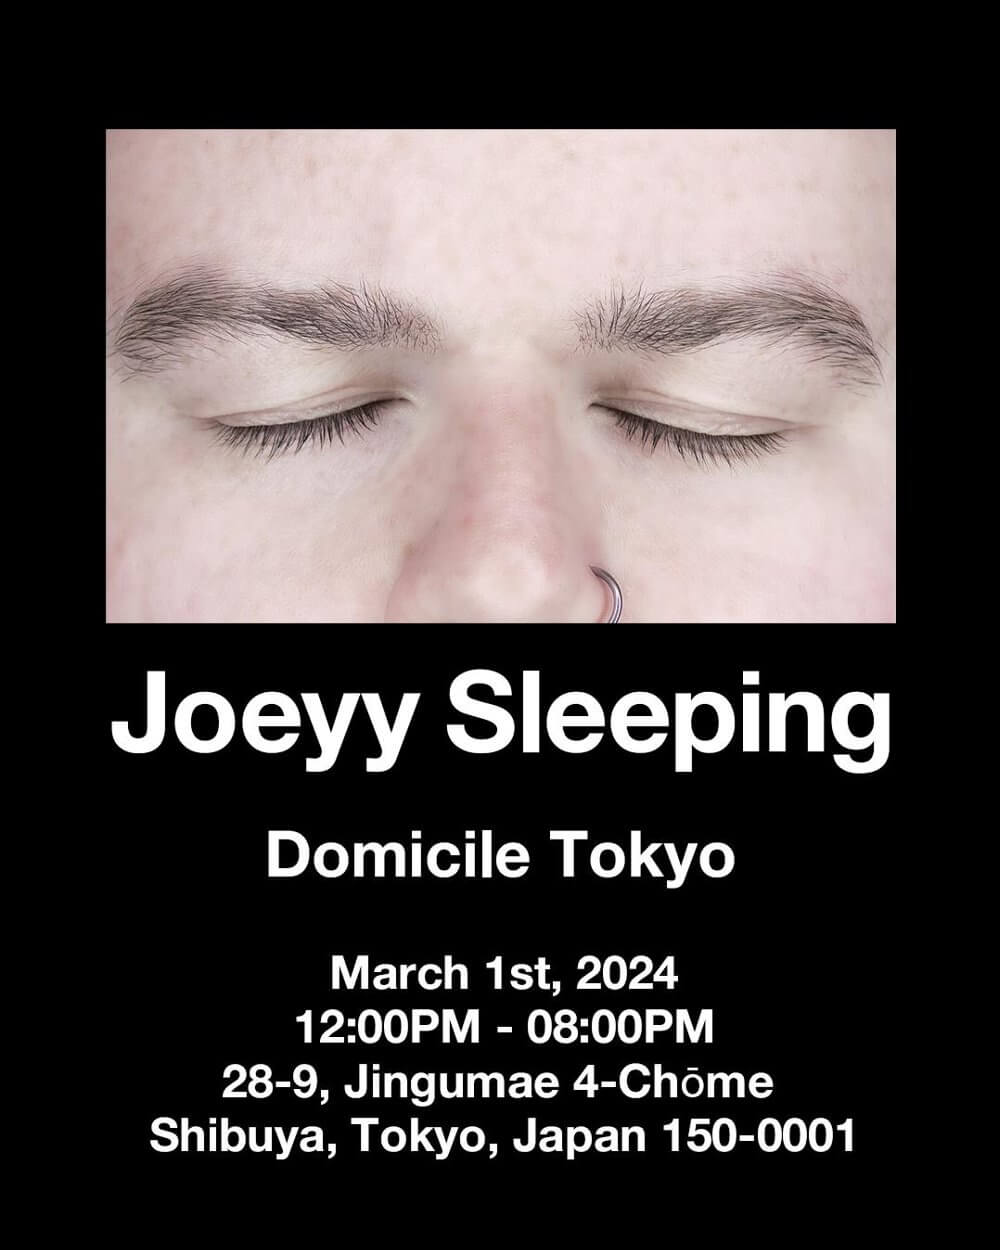 JOEYY SLEEPING